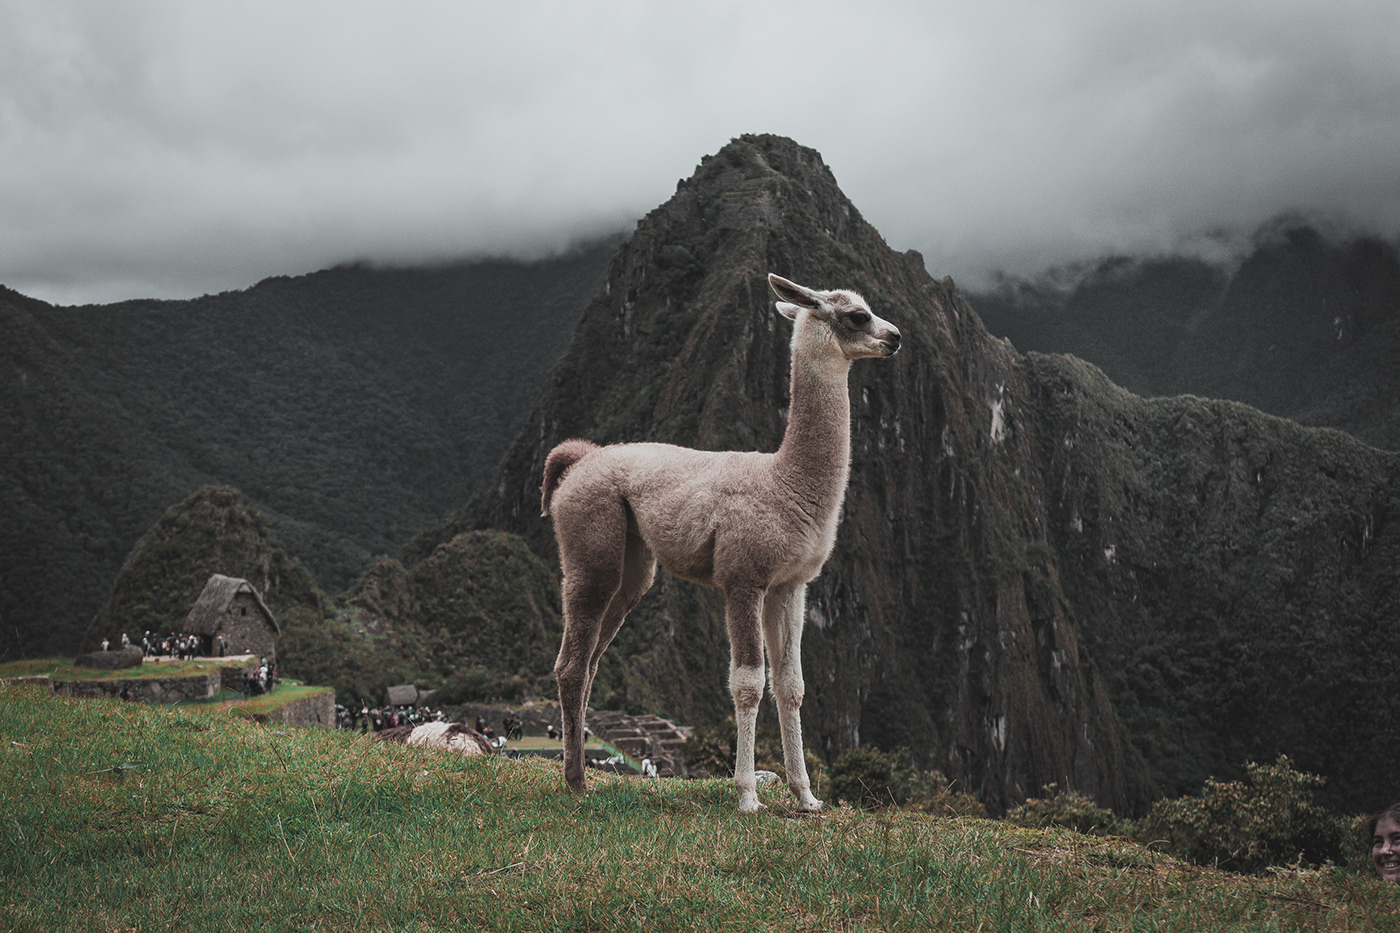 cusco cusco peru landscape photography landscapes beauty photography peru phtotography maravilla del mundo